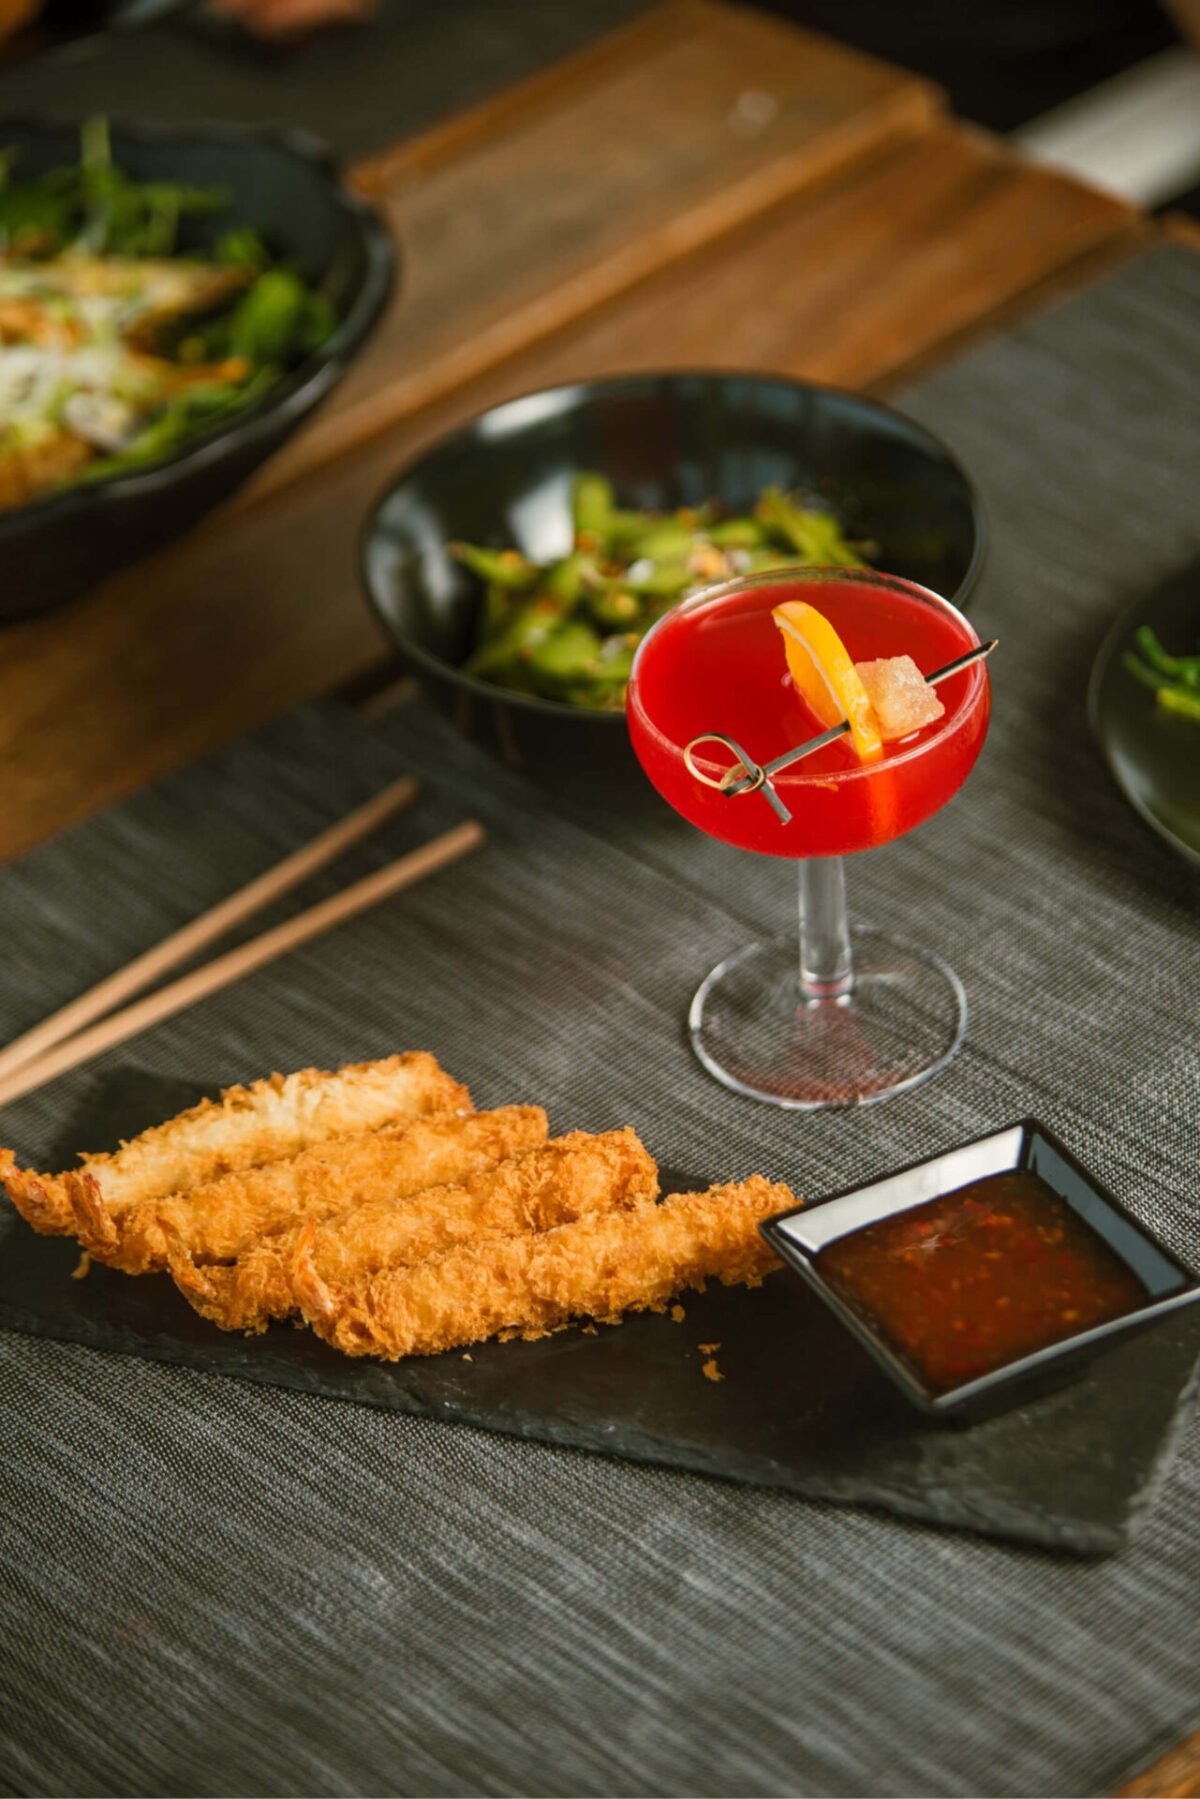 Evening and night menu items featuring a cocktail, tempura shrimp, and edamame salad